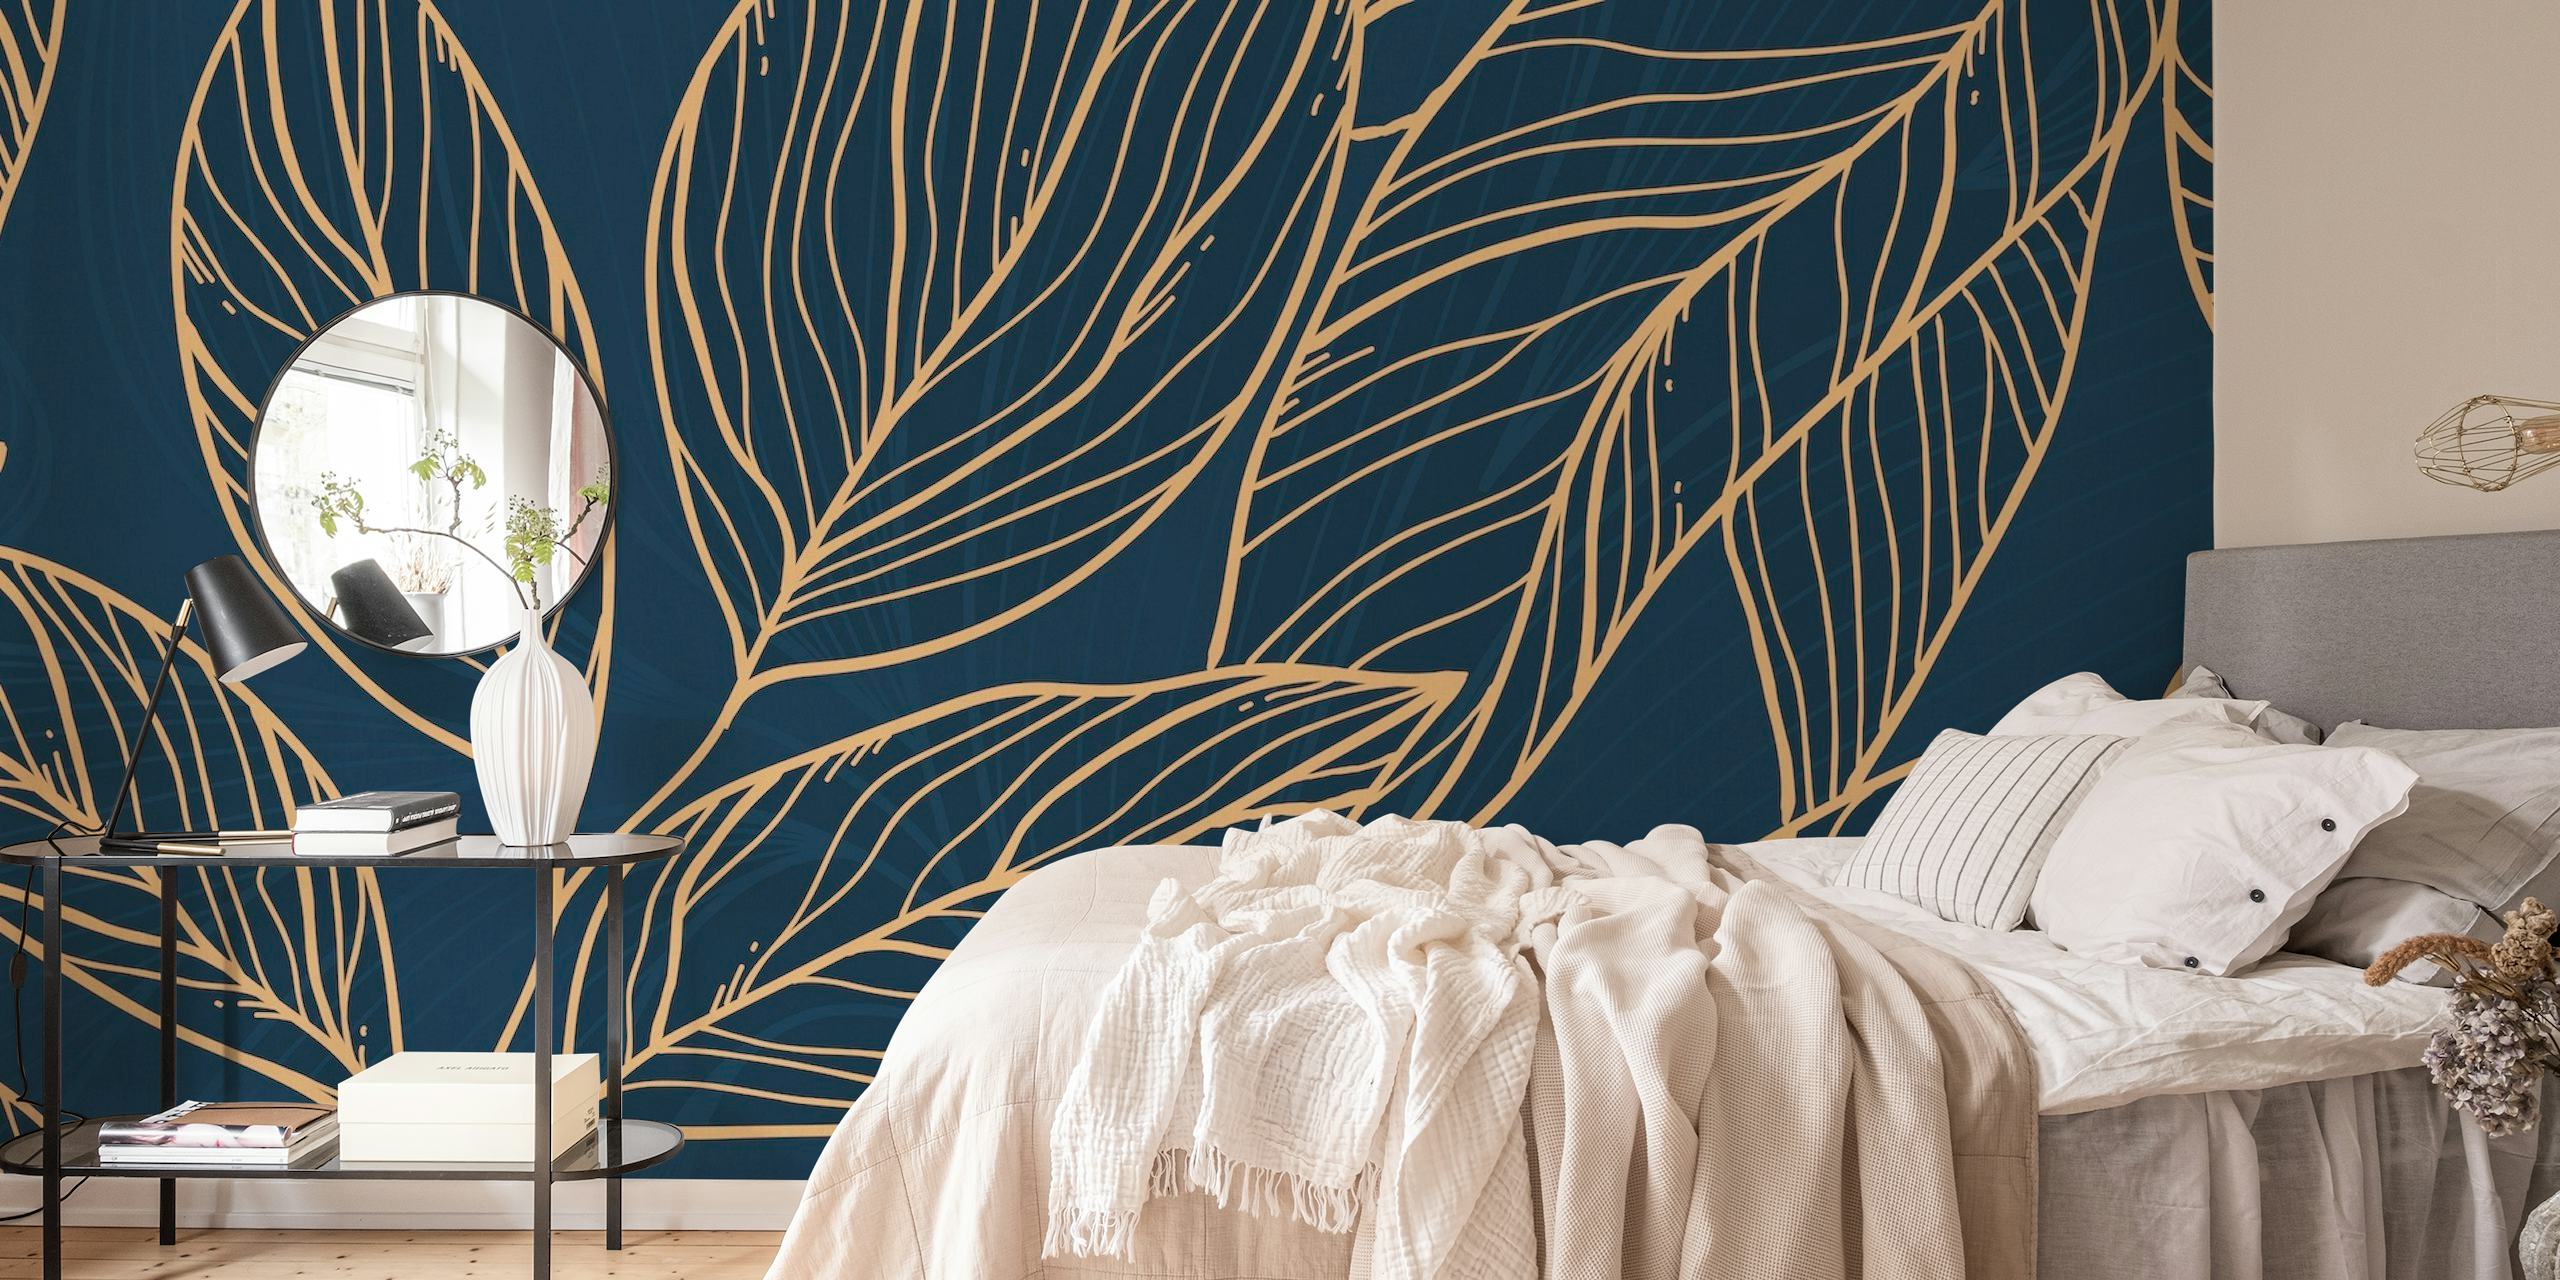 Leaf Lines Plava zidna slika s obrisima zlatnog lišća na tamnoplavoj pozadini